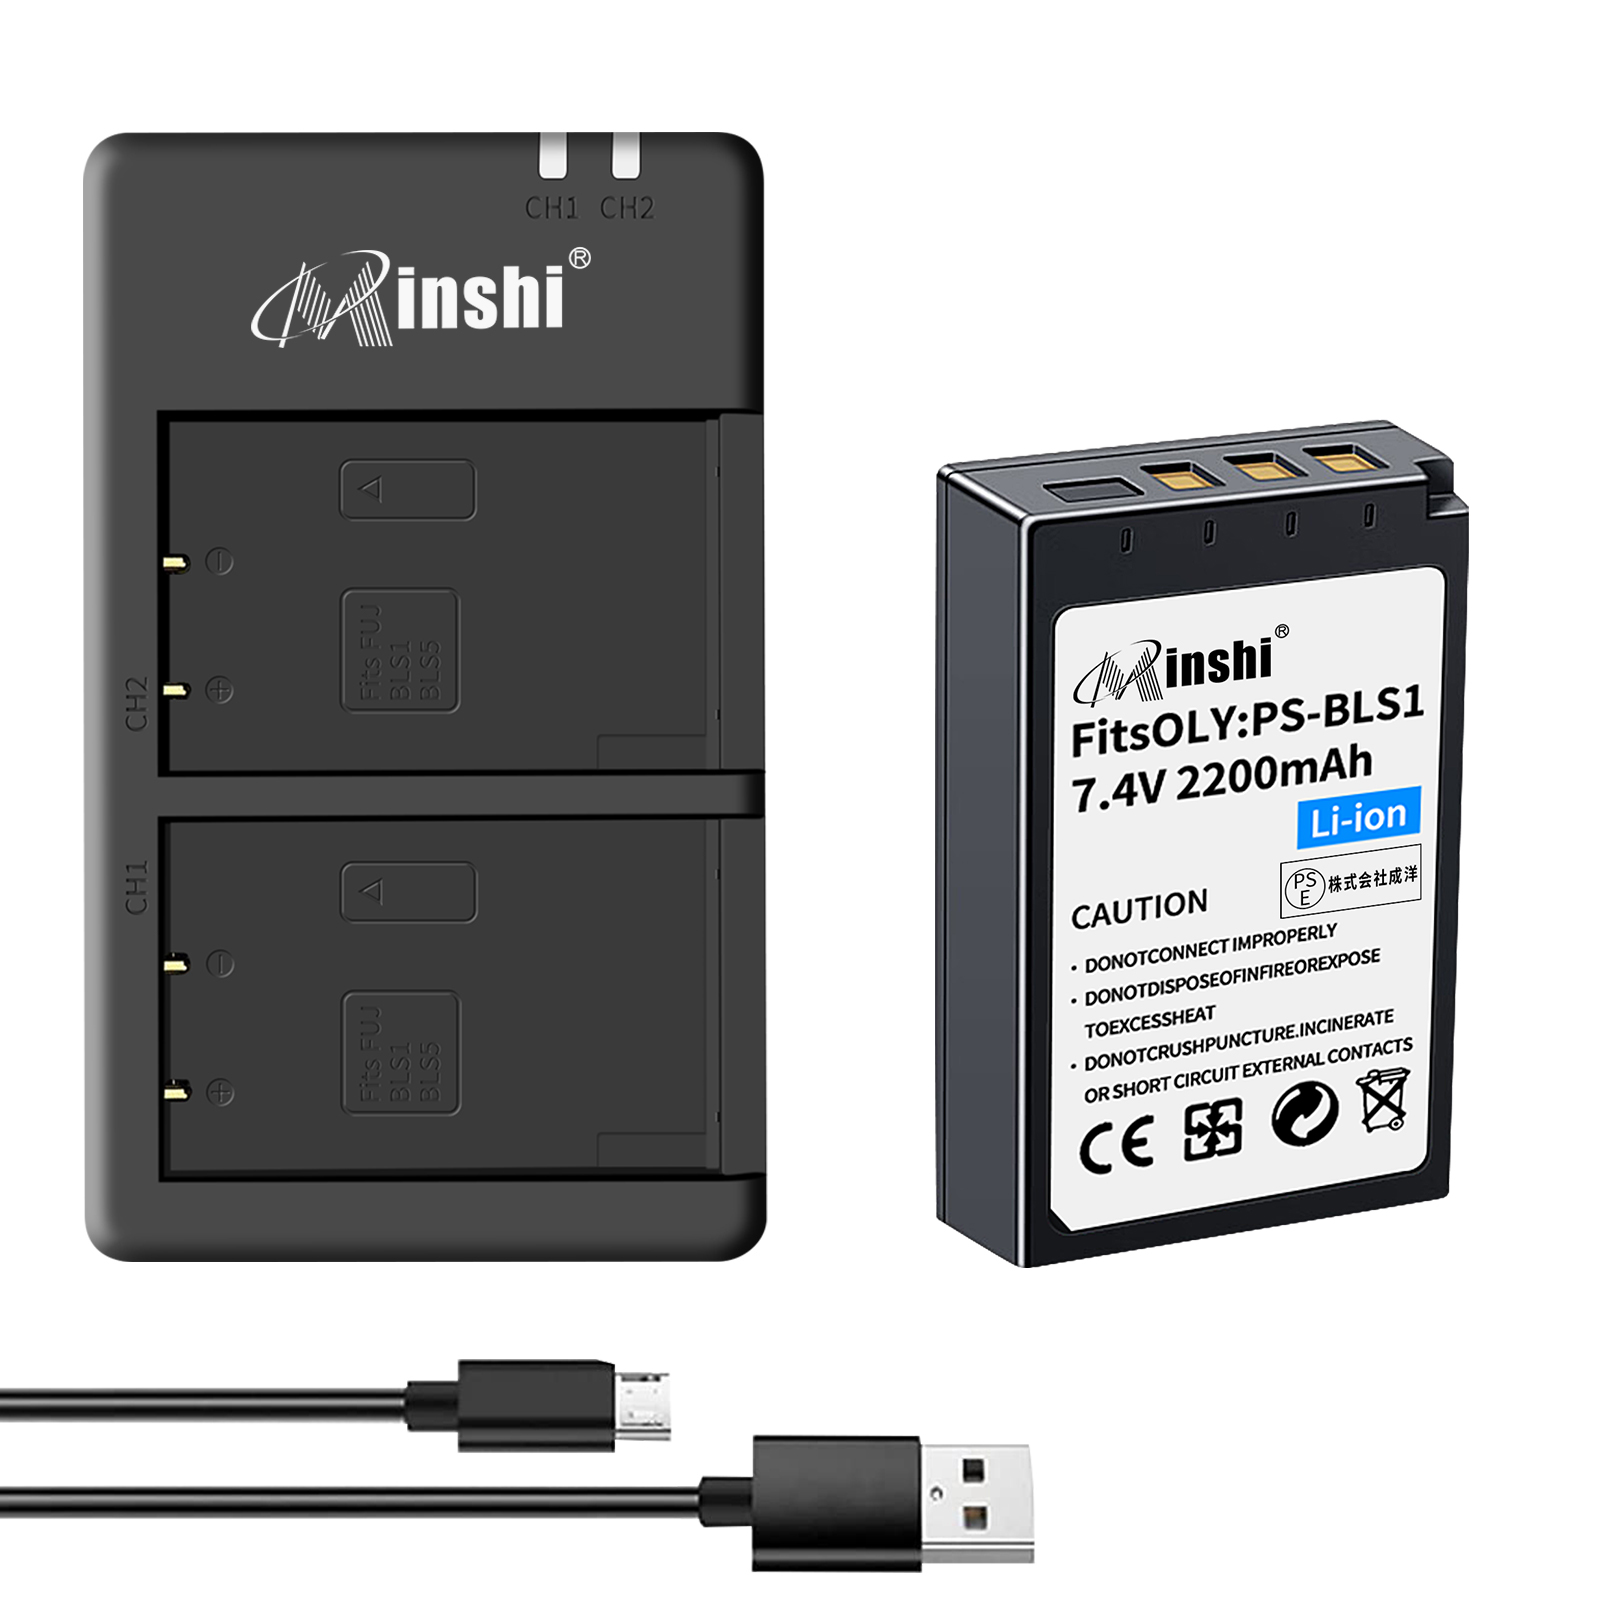 【クロス付き】minshi OLYMPUS E-P2 E-PL1 【2200mAh 7.4V】PSE認定済 高品質交換用バッテリー